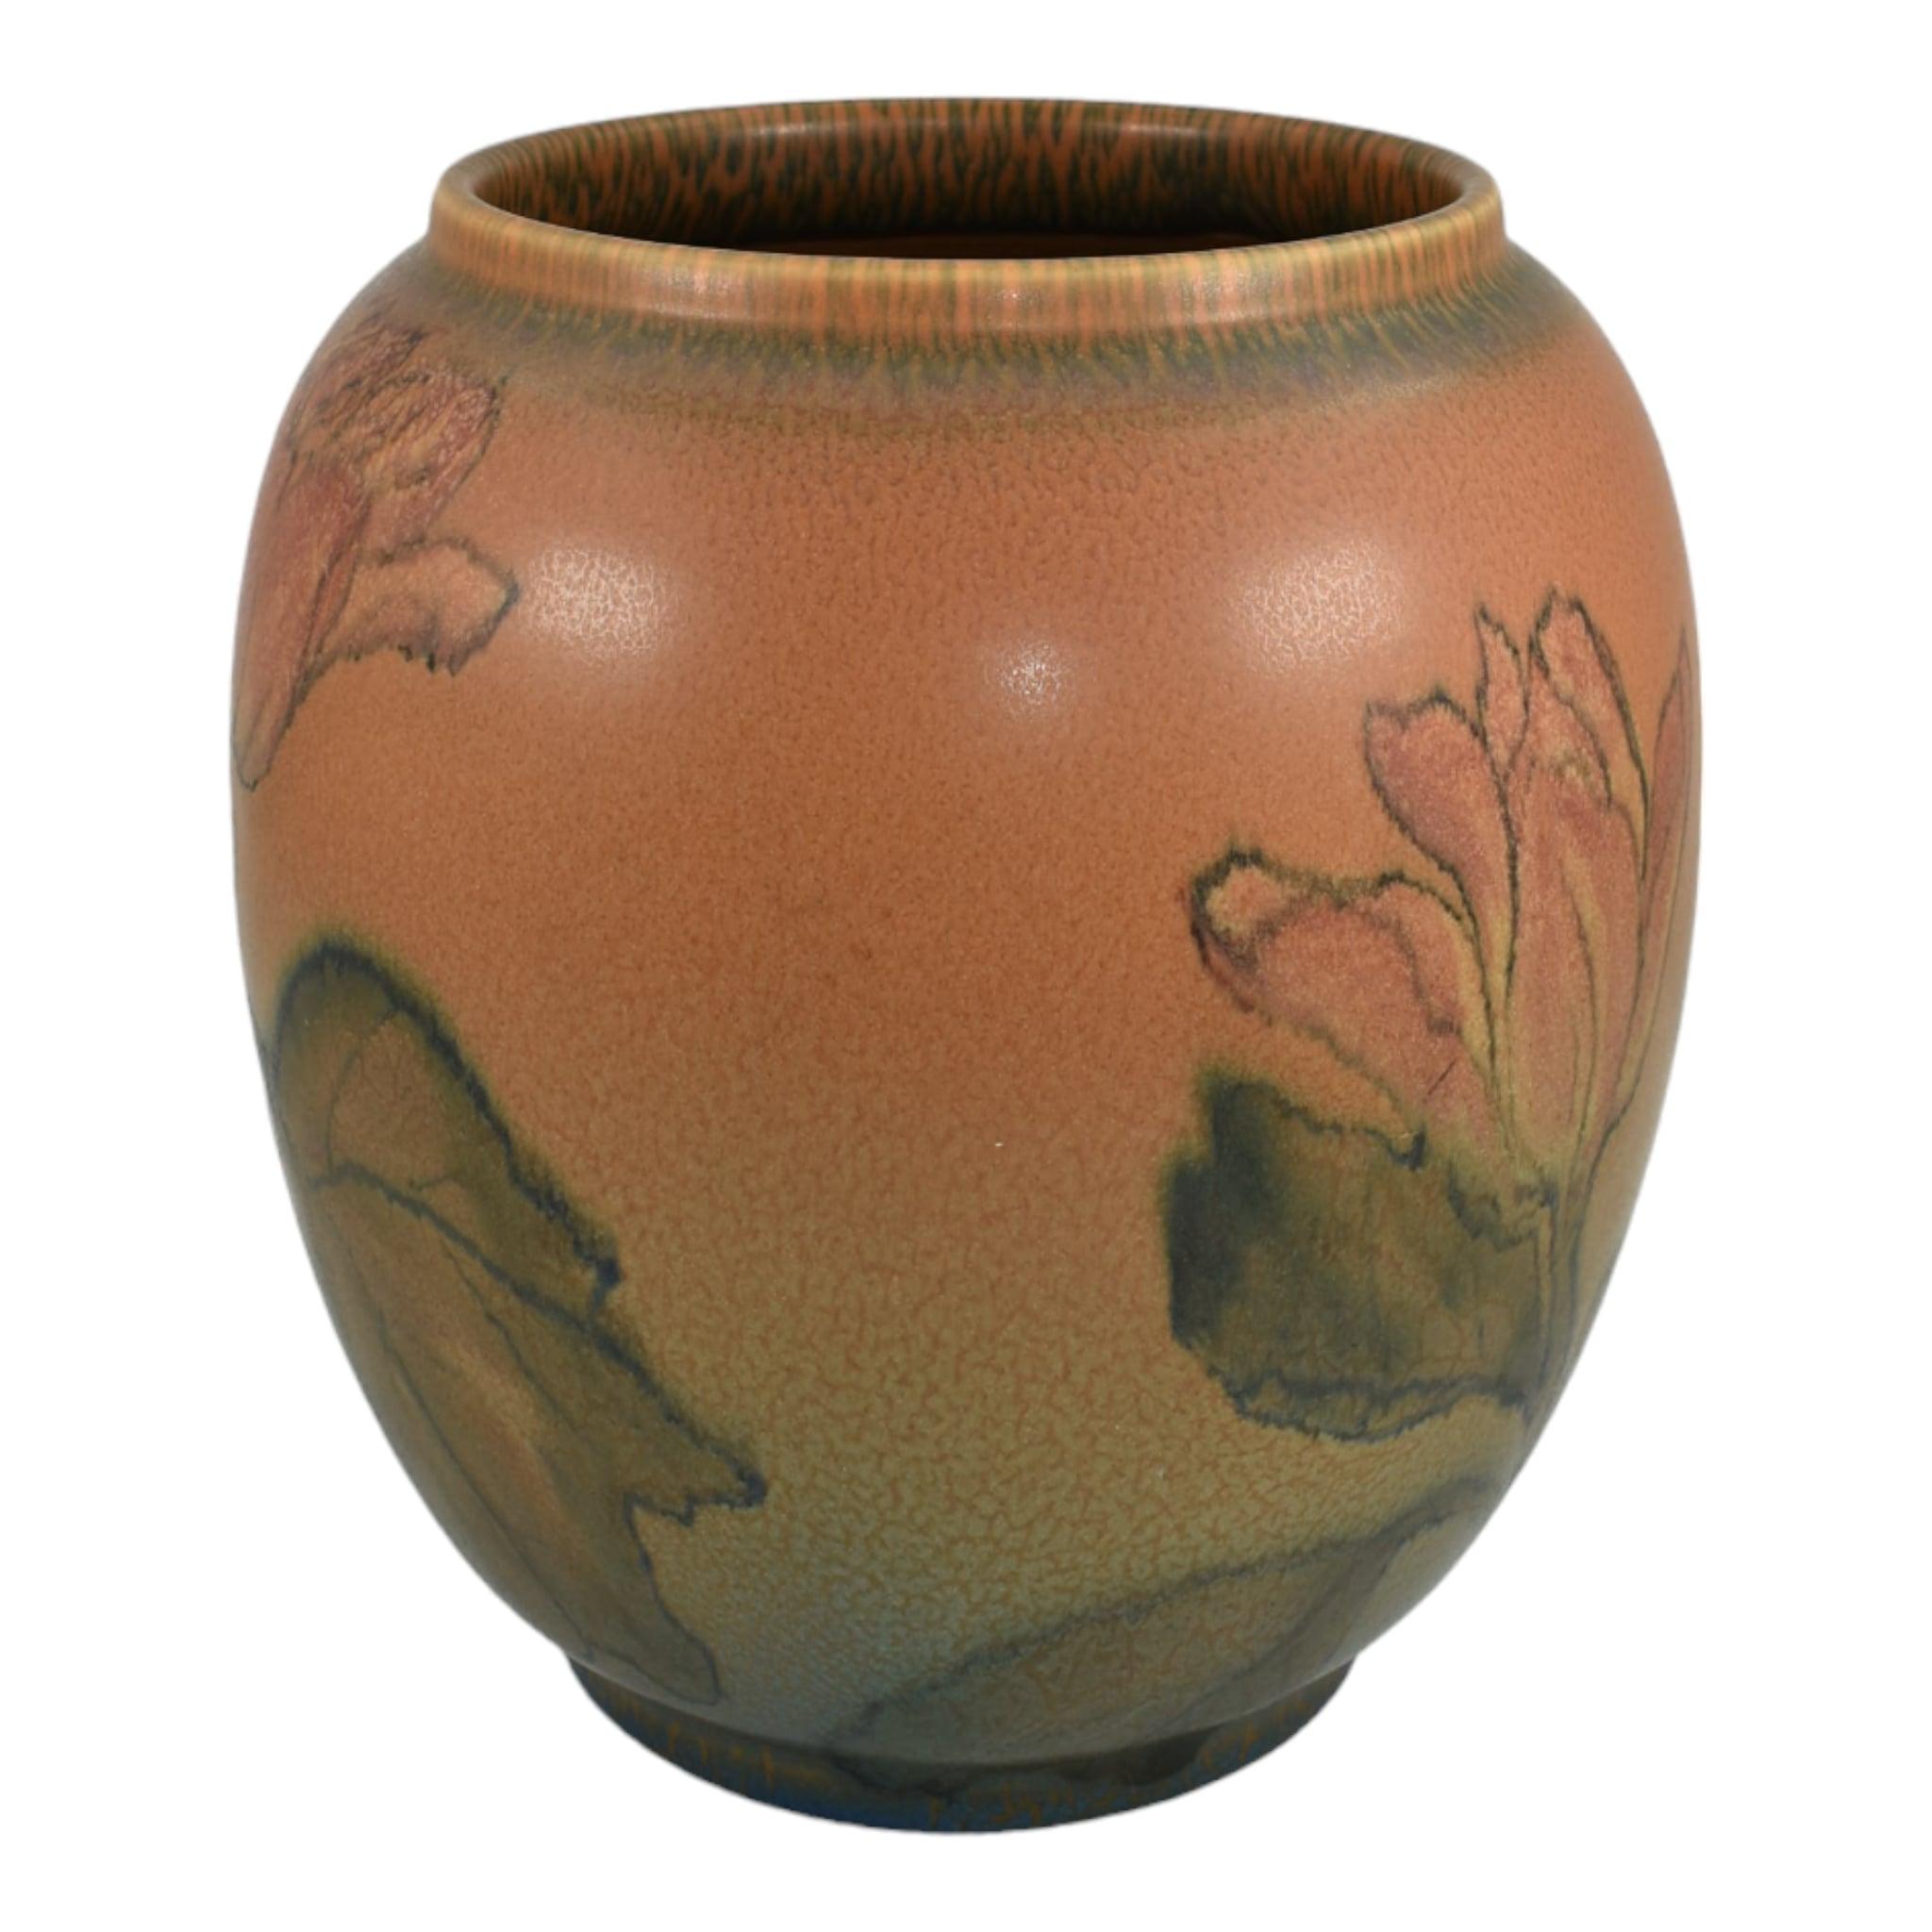 Rookwood 1924 Vintage Art Pottery Orange Vellum Keramische Vase 2245 (Lincoln)
Große und beeindruckende bauchige Vase mit einem außergewöhnlichen Blumenmuster, das 1924 von Elizabeth Lincoln handgemalt wurde.
Ausgezeichneter Originalzustand. Keine